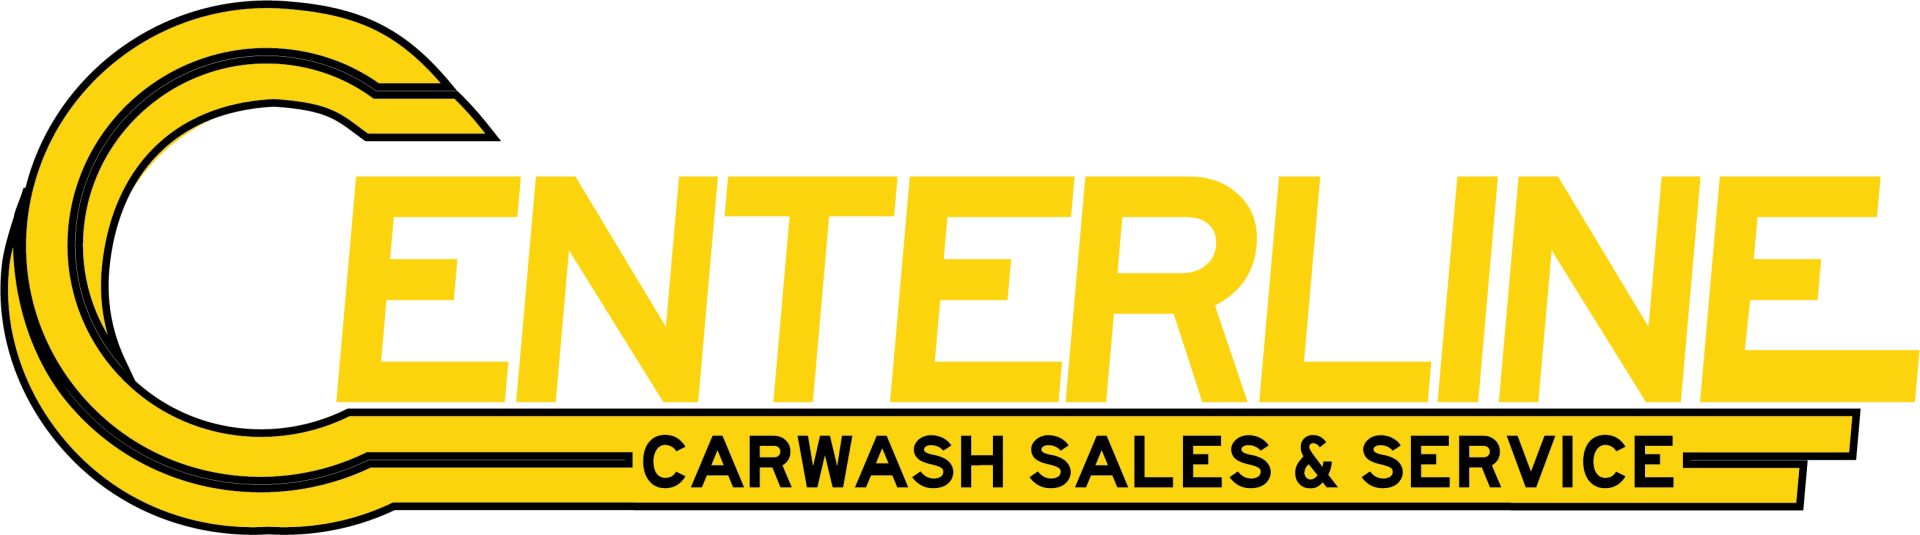 Centerline Carwash Sales & Service